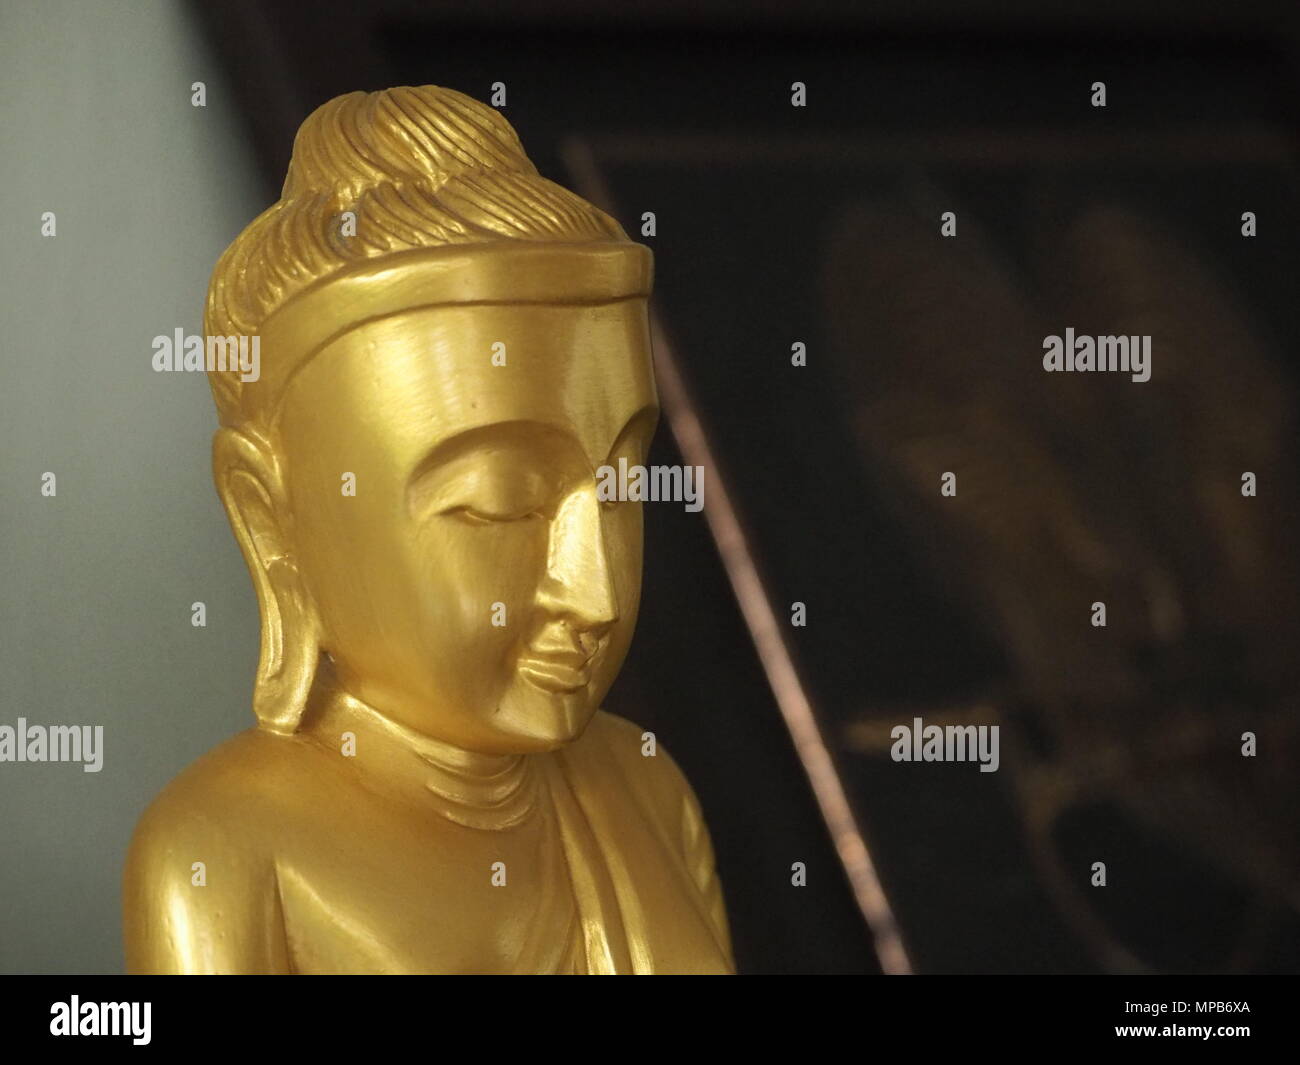 Kopf geschossen von einem goldenen Buddha souvenir Statue in der Meditation dar. Stockfoto